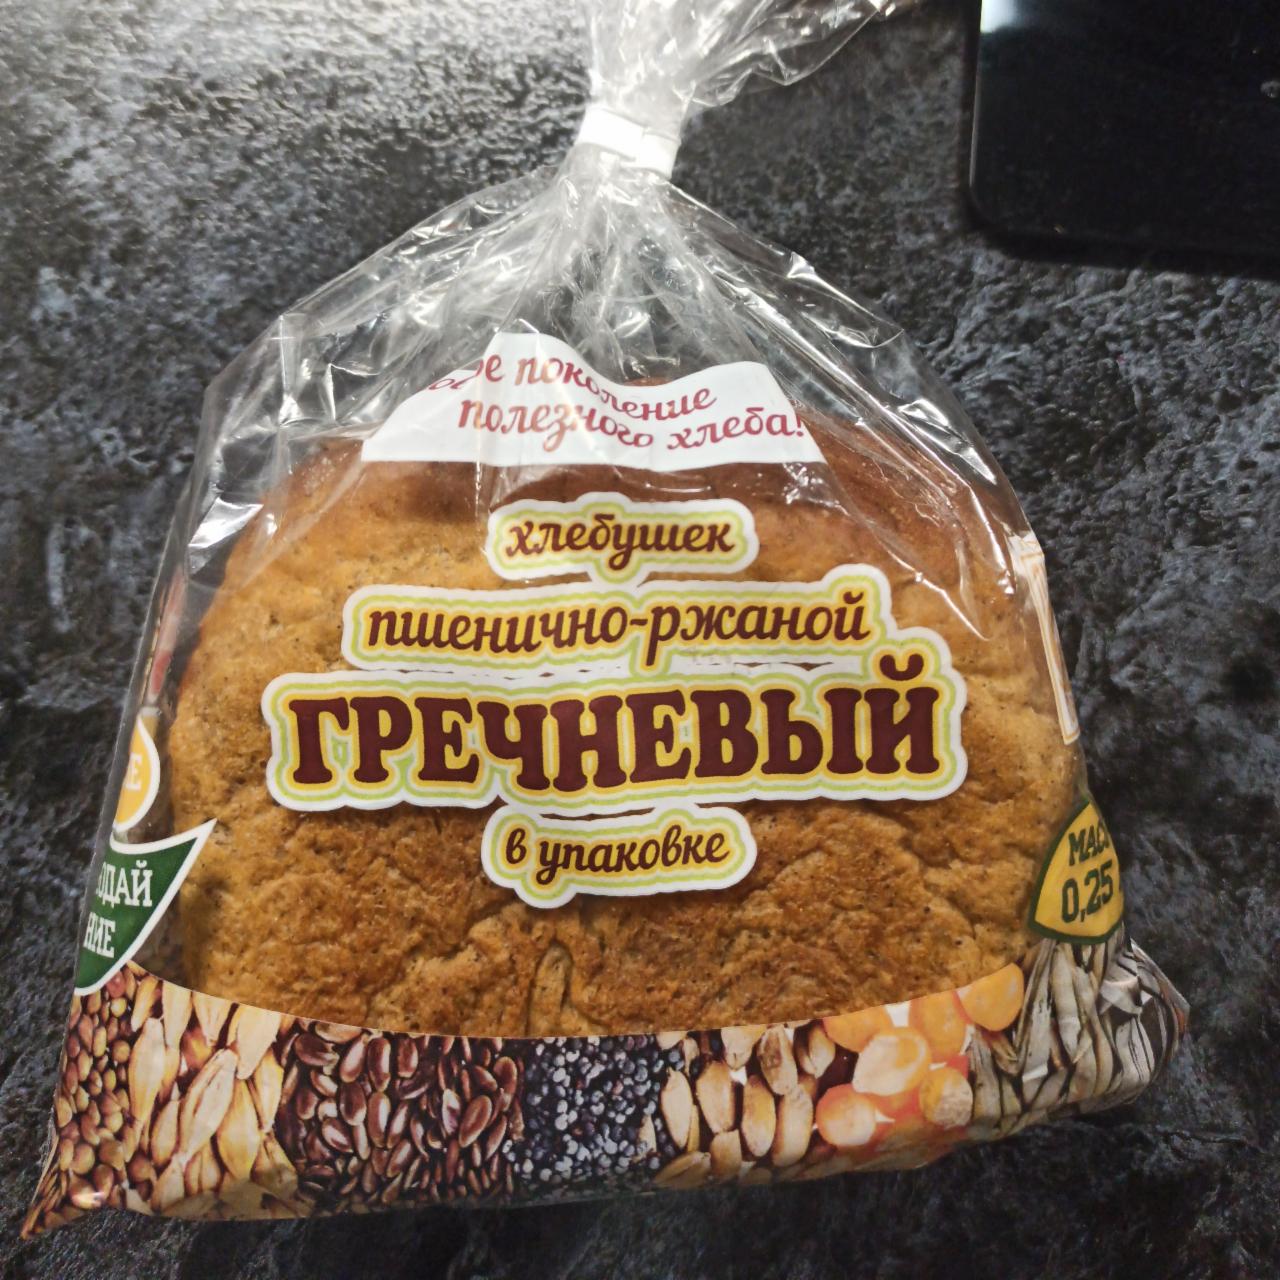 Фото - Хлебушек пшенично-ржаной гречневый Слободской хлеб